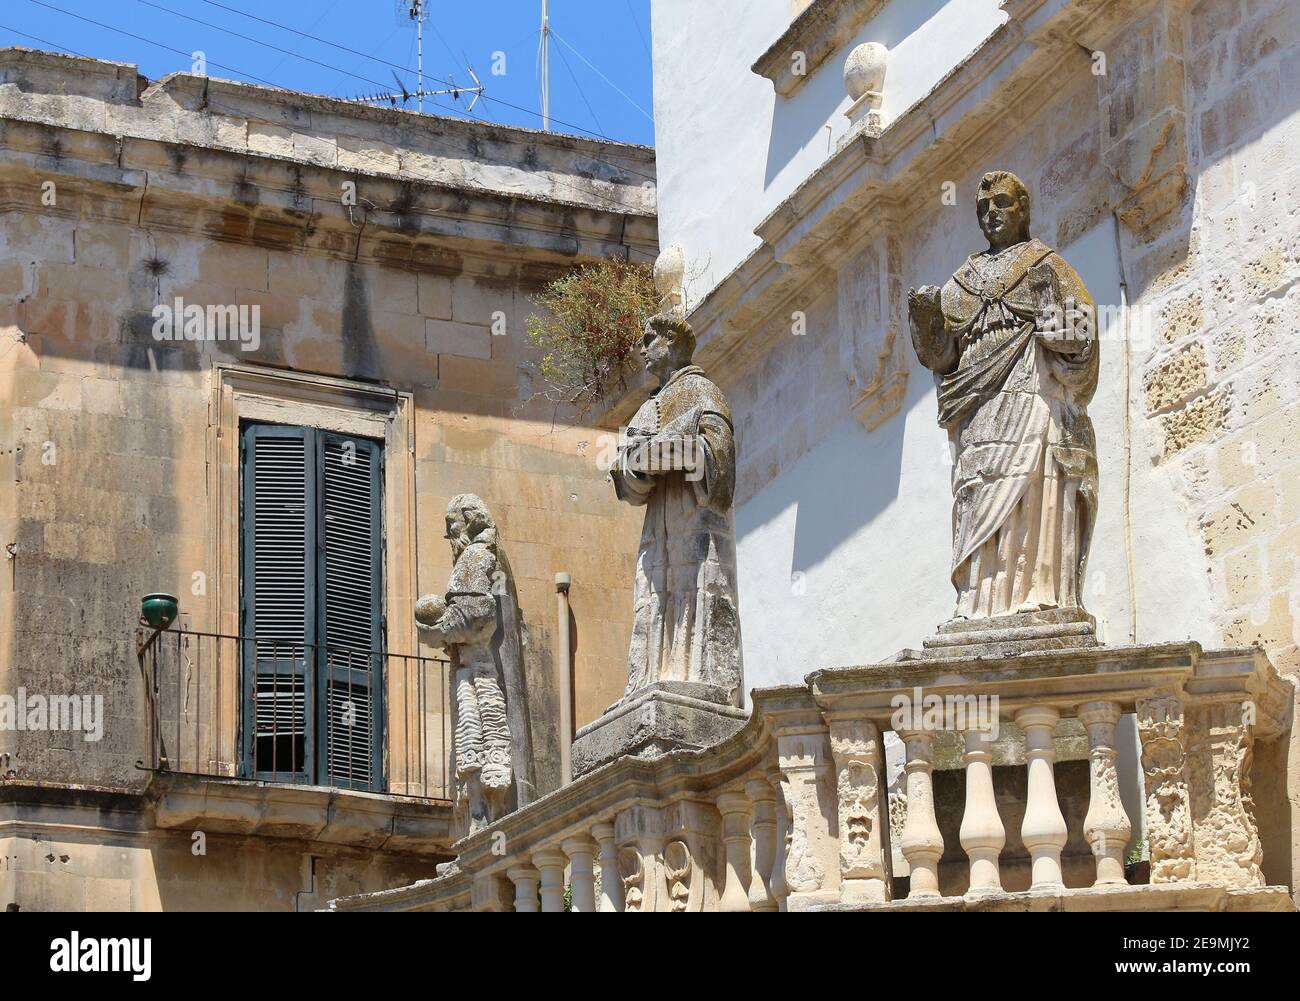 Cattedrale di Lecce statue di san in Italia. Architettura barocca italiana. Foto Stock